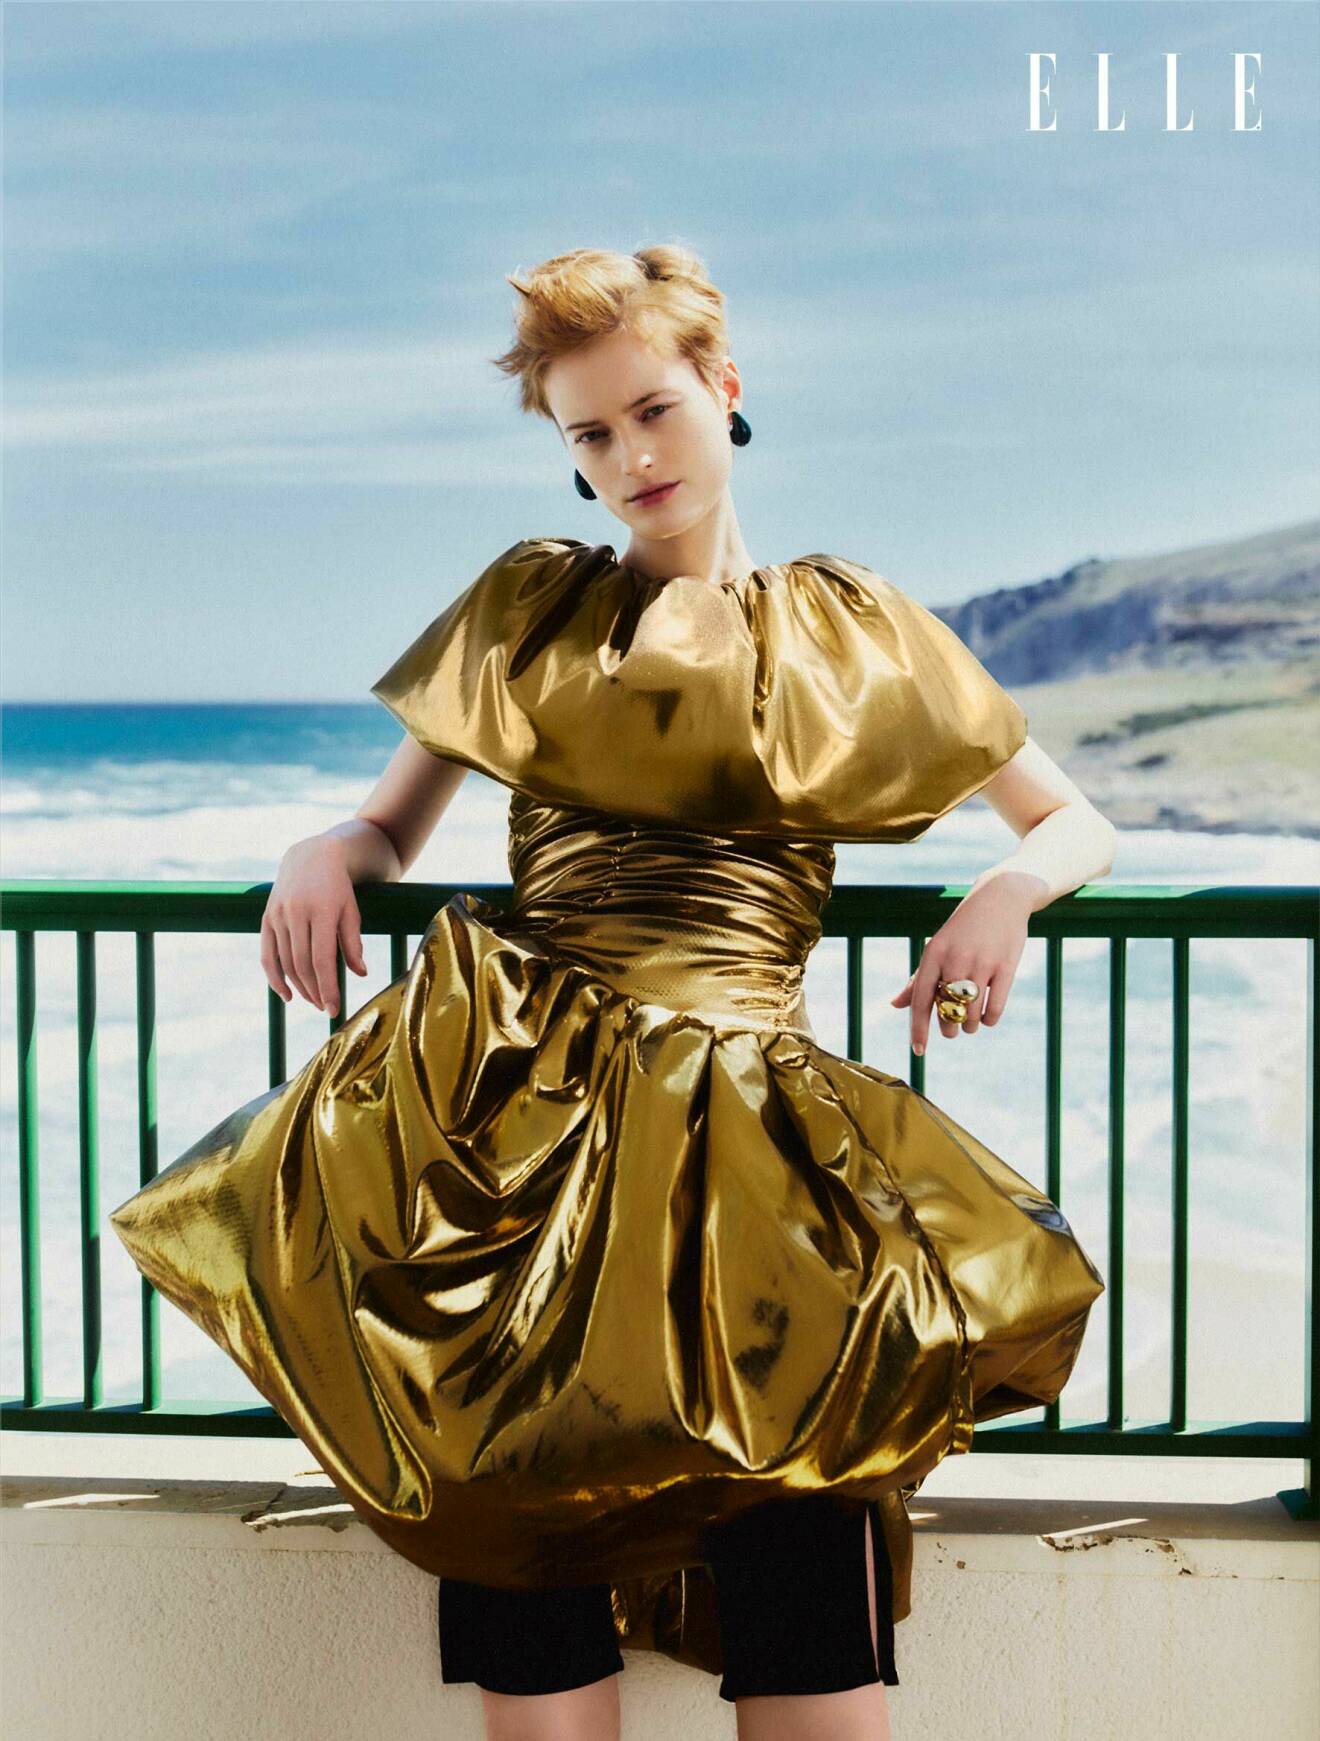 Modellen bär en guldig klänning från Nicklas Skovgaard med svarta shorts från Katharina Dubbick under.